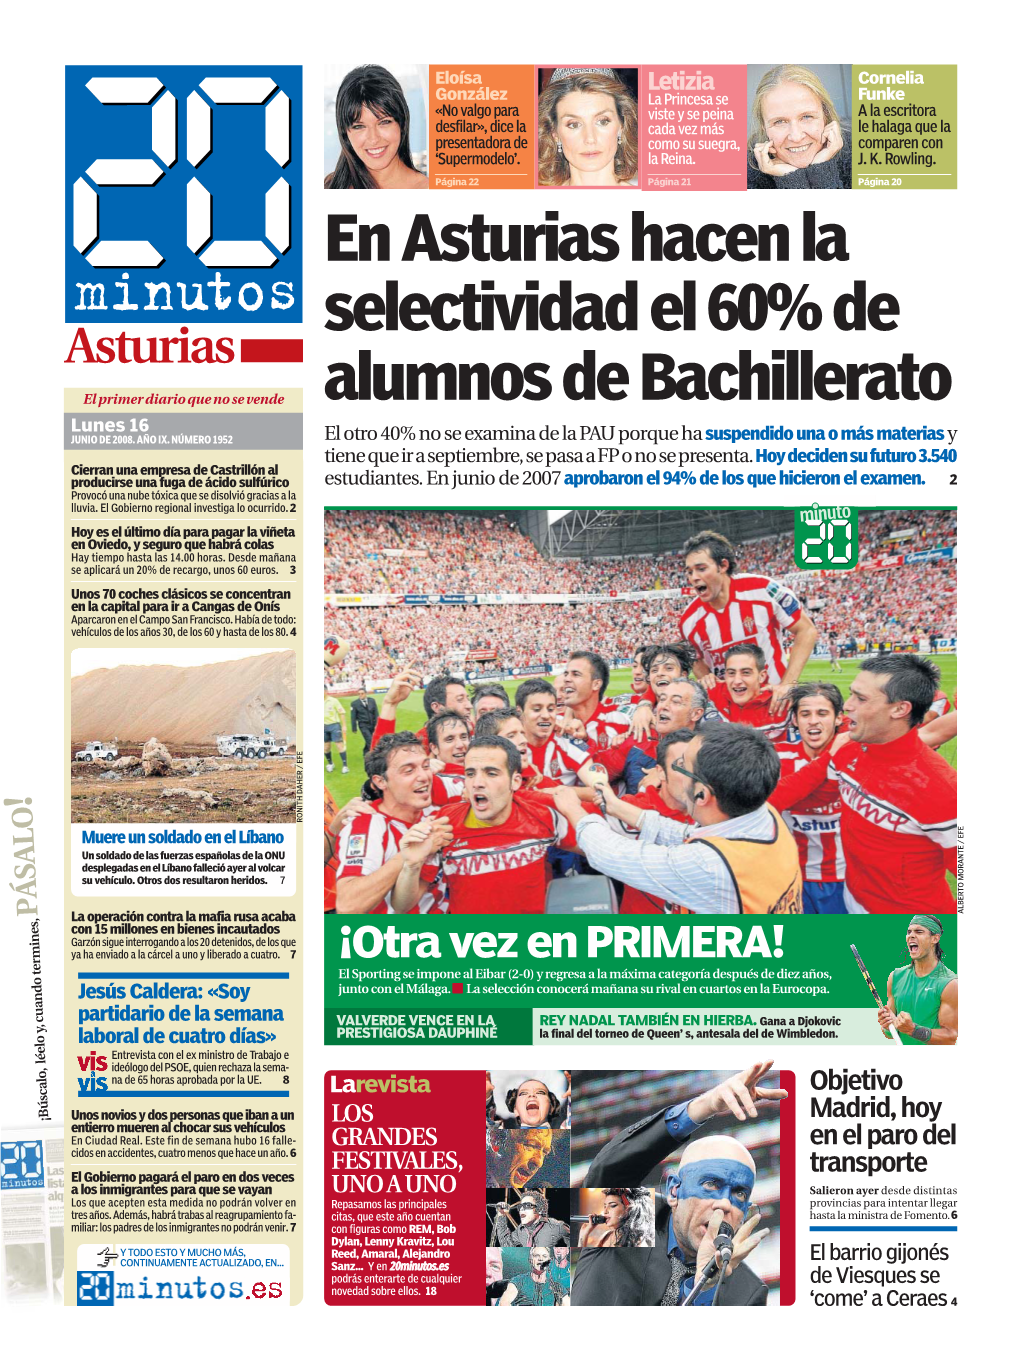 En Asturias Hacen La Selectividad El 60% De Alumnos